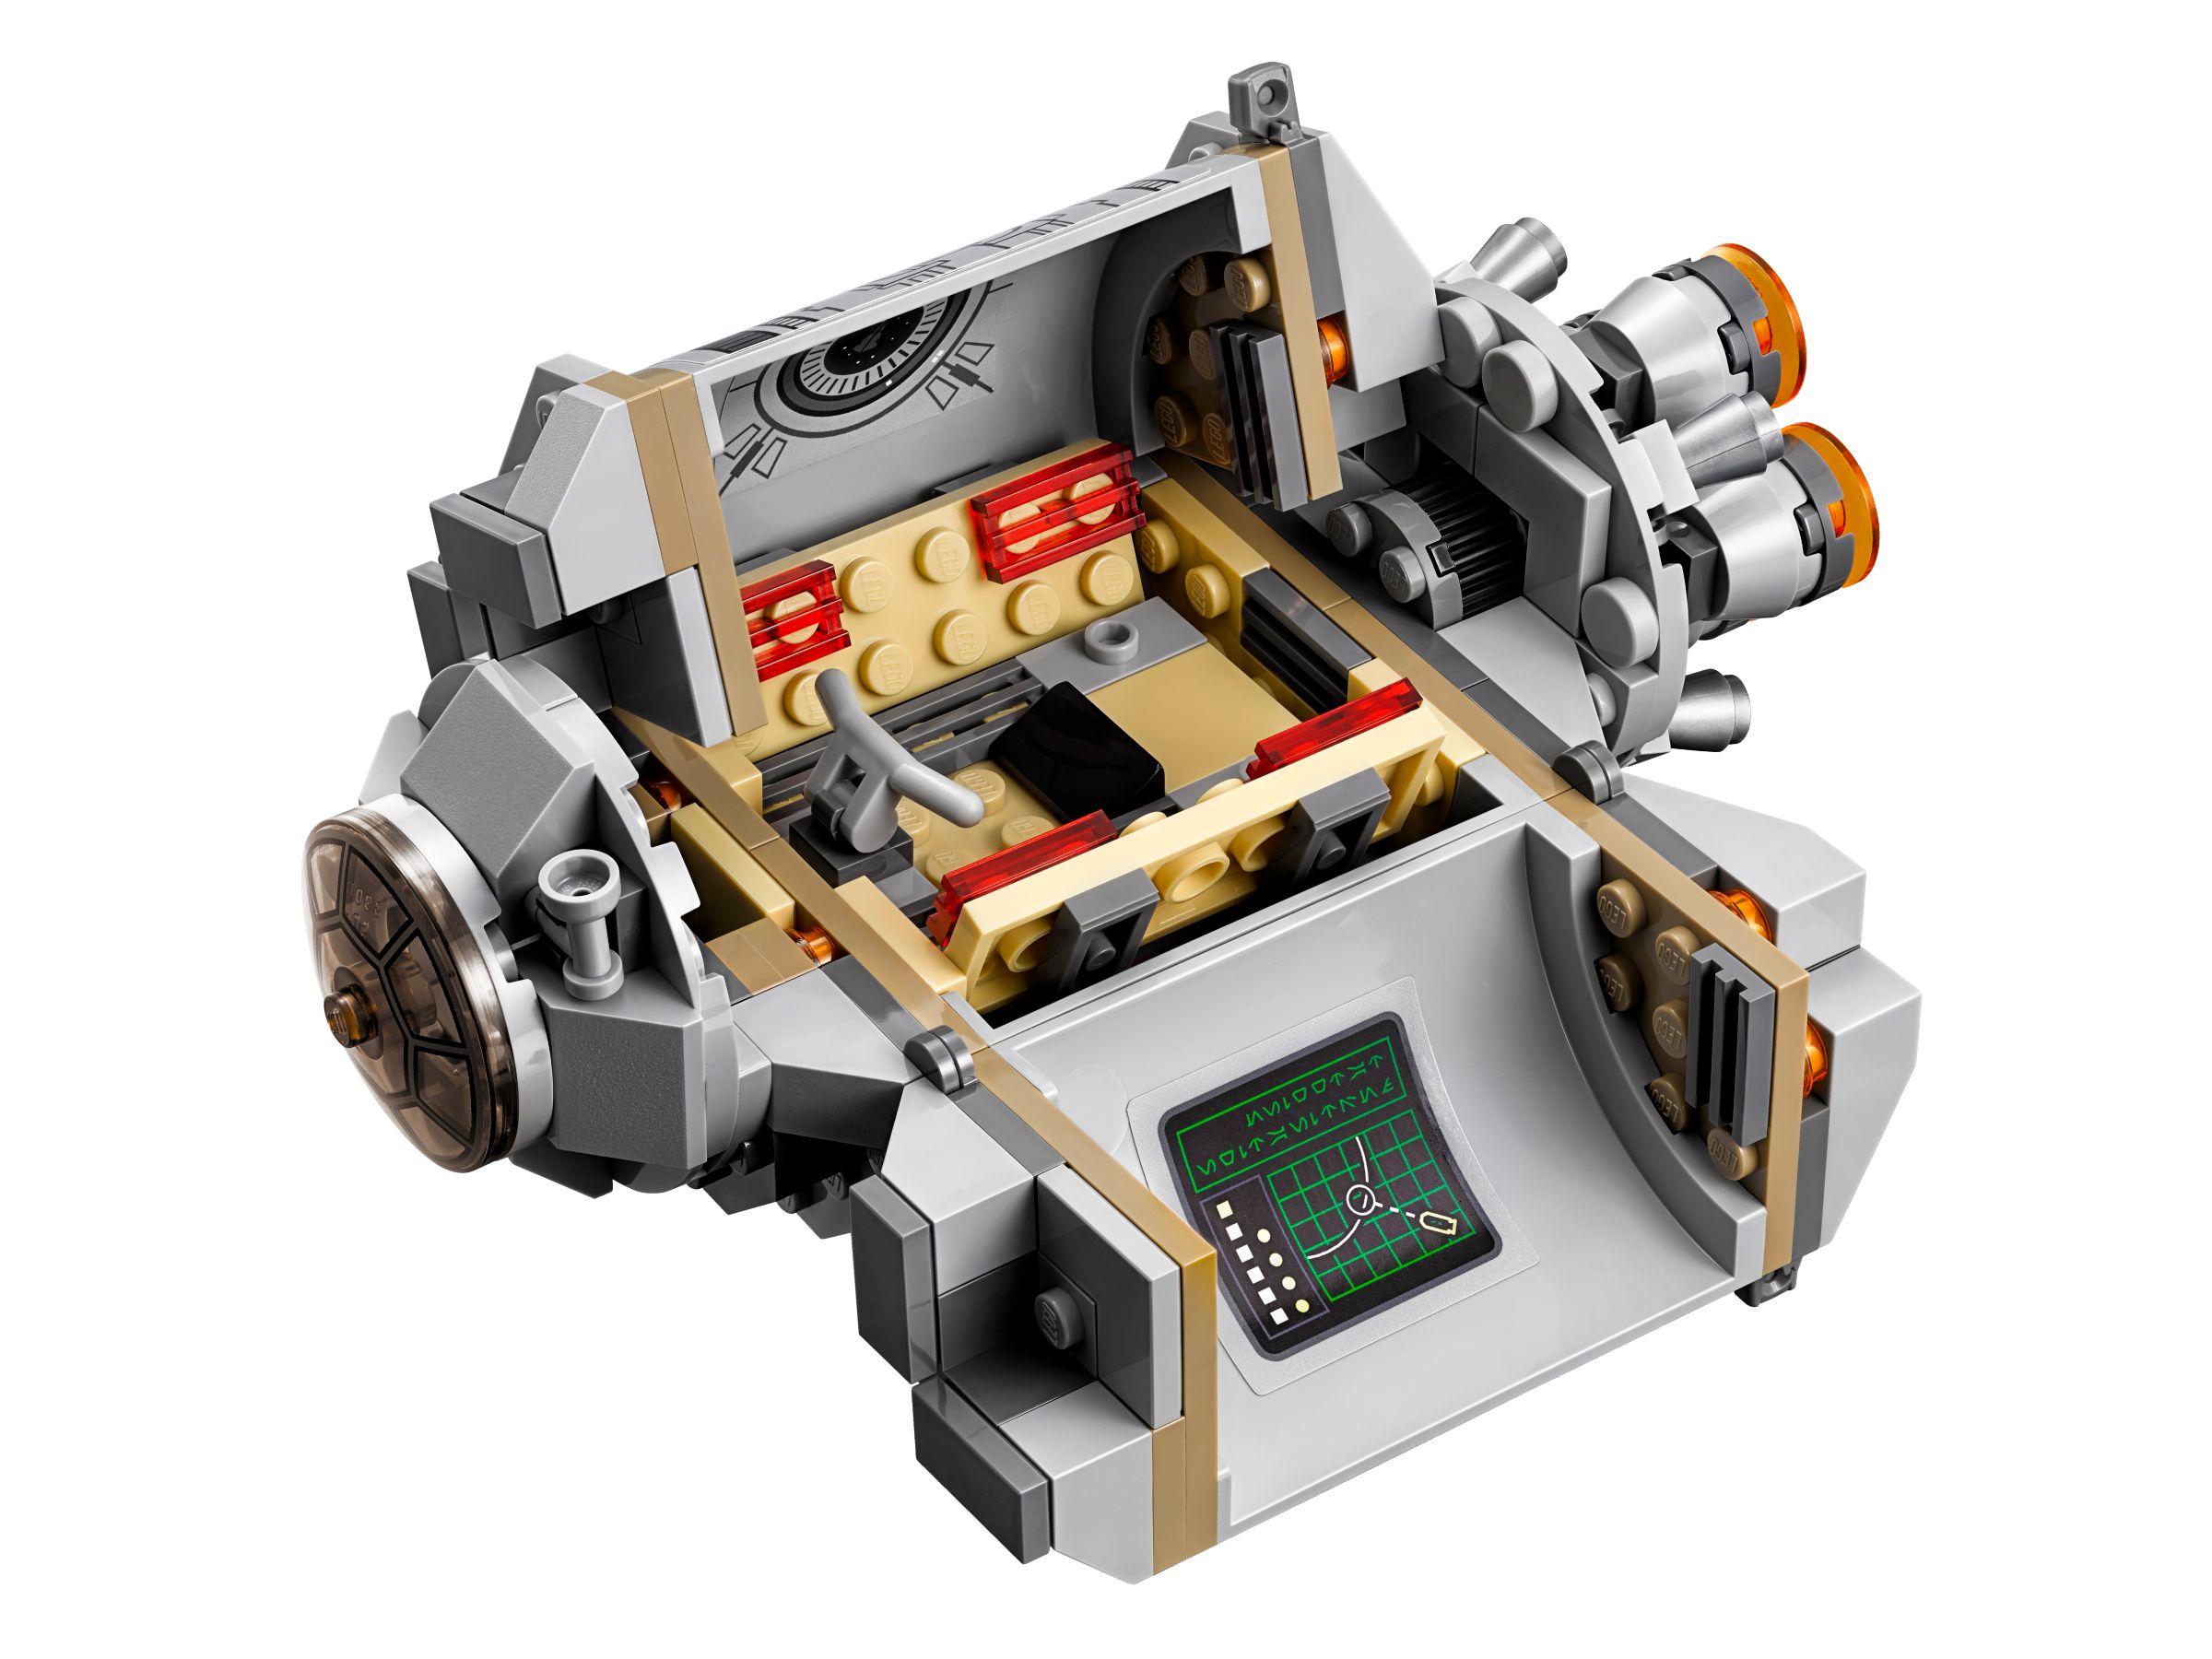 LEGO Star Wars 75136 Droid™ Escape Pod LEGO_75136_alt2.jpg